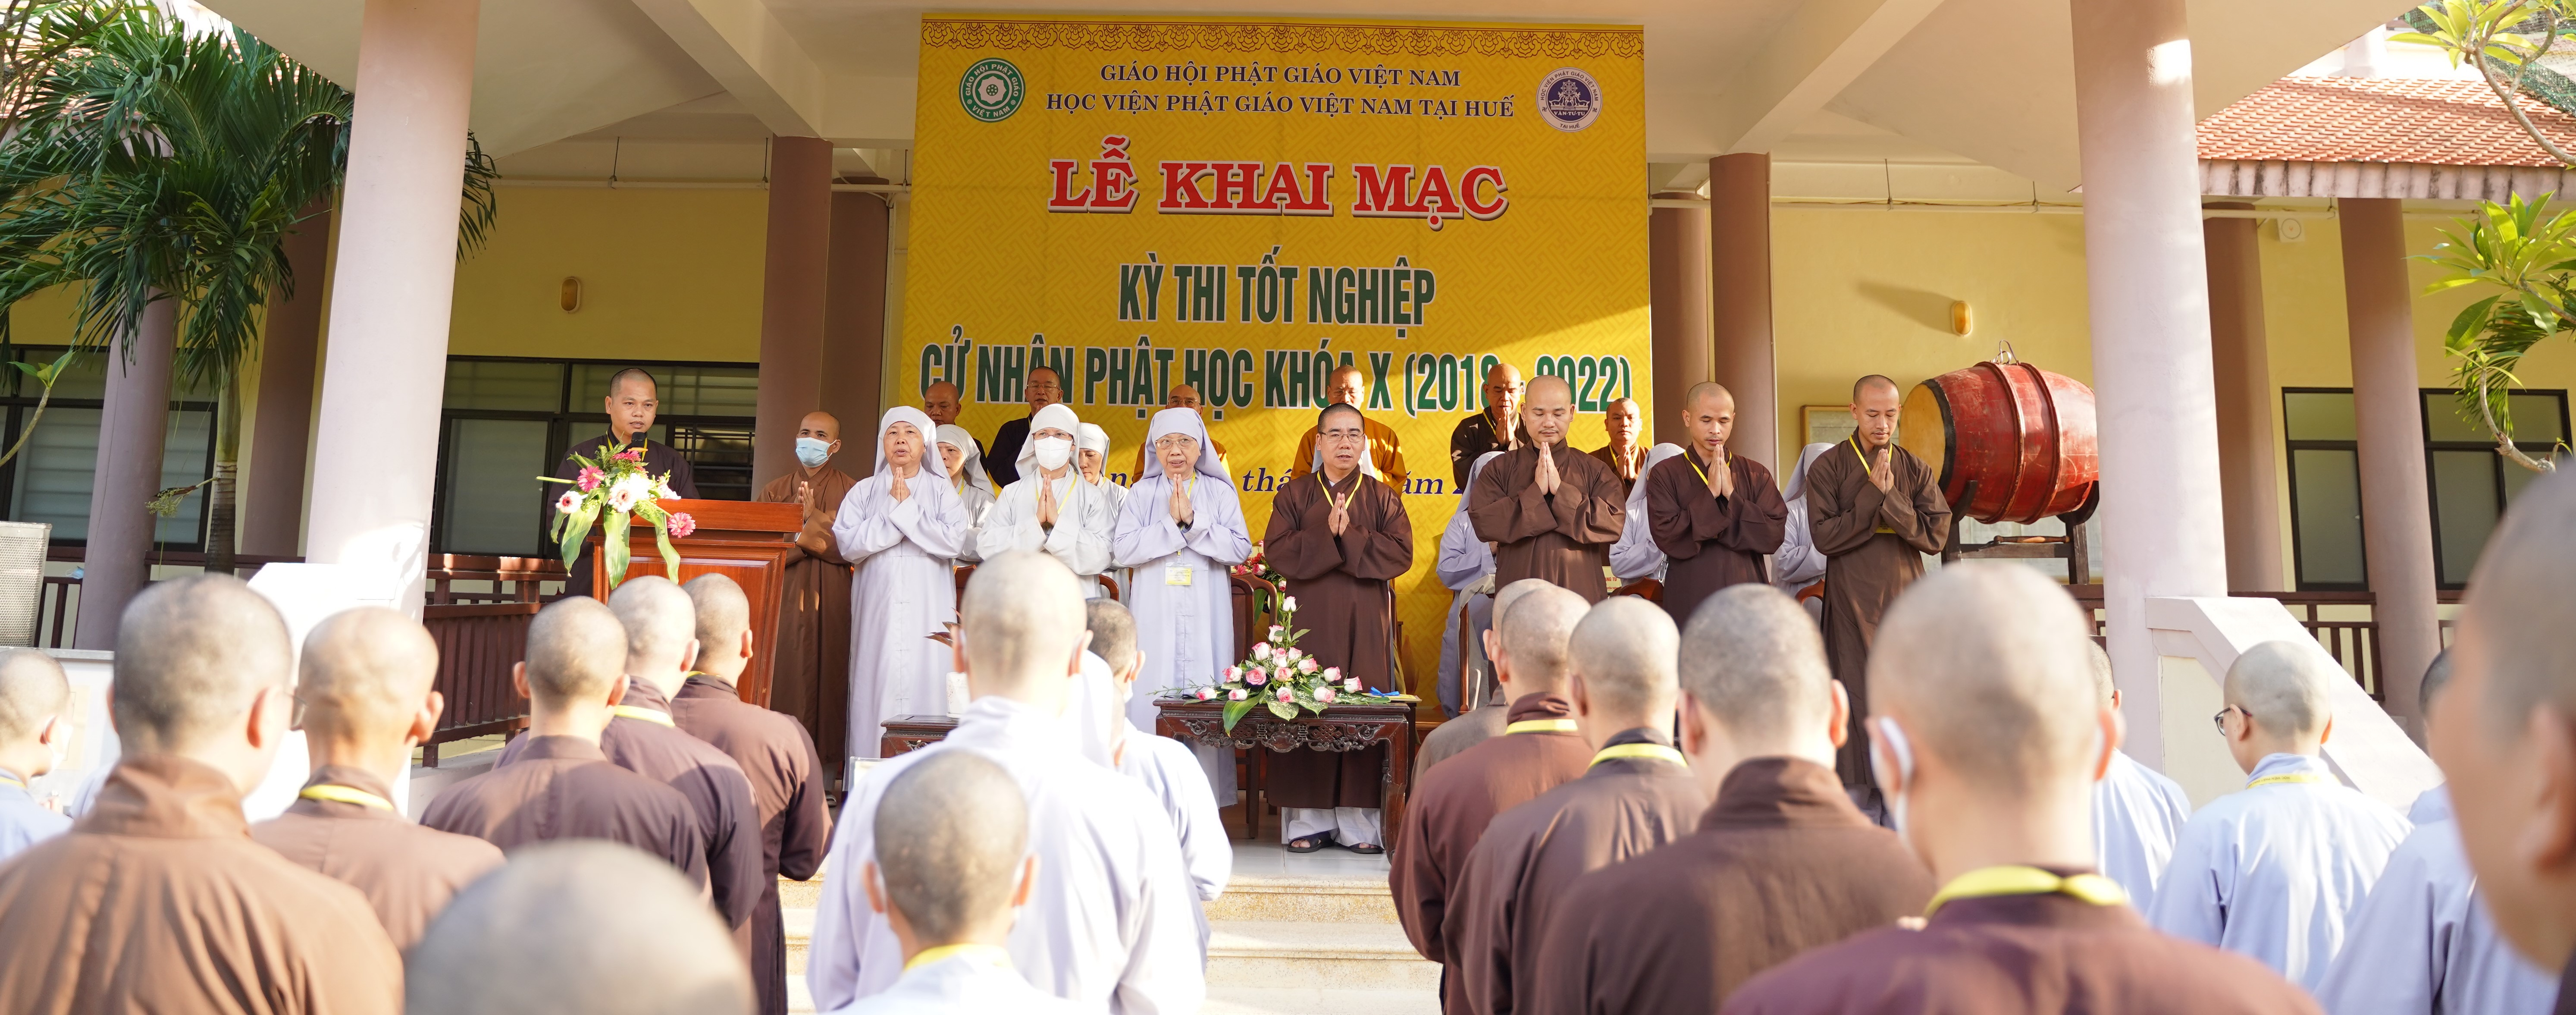 Học viện PGVN tại Huế tổ chức kỳ thi Tốt nghiệp Cử nhân Phật học khóa X